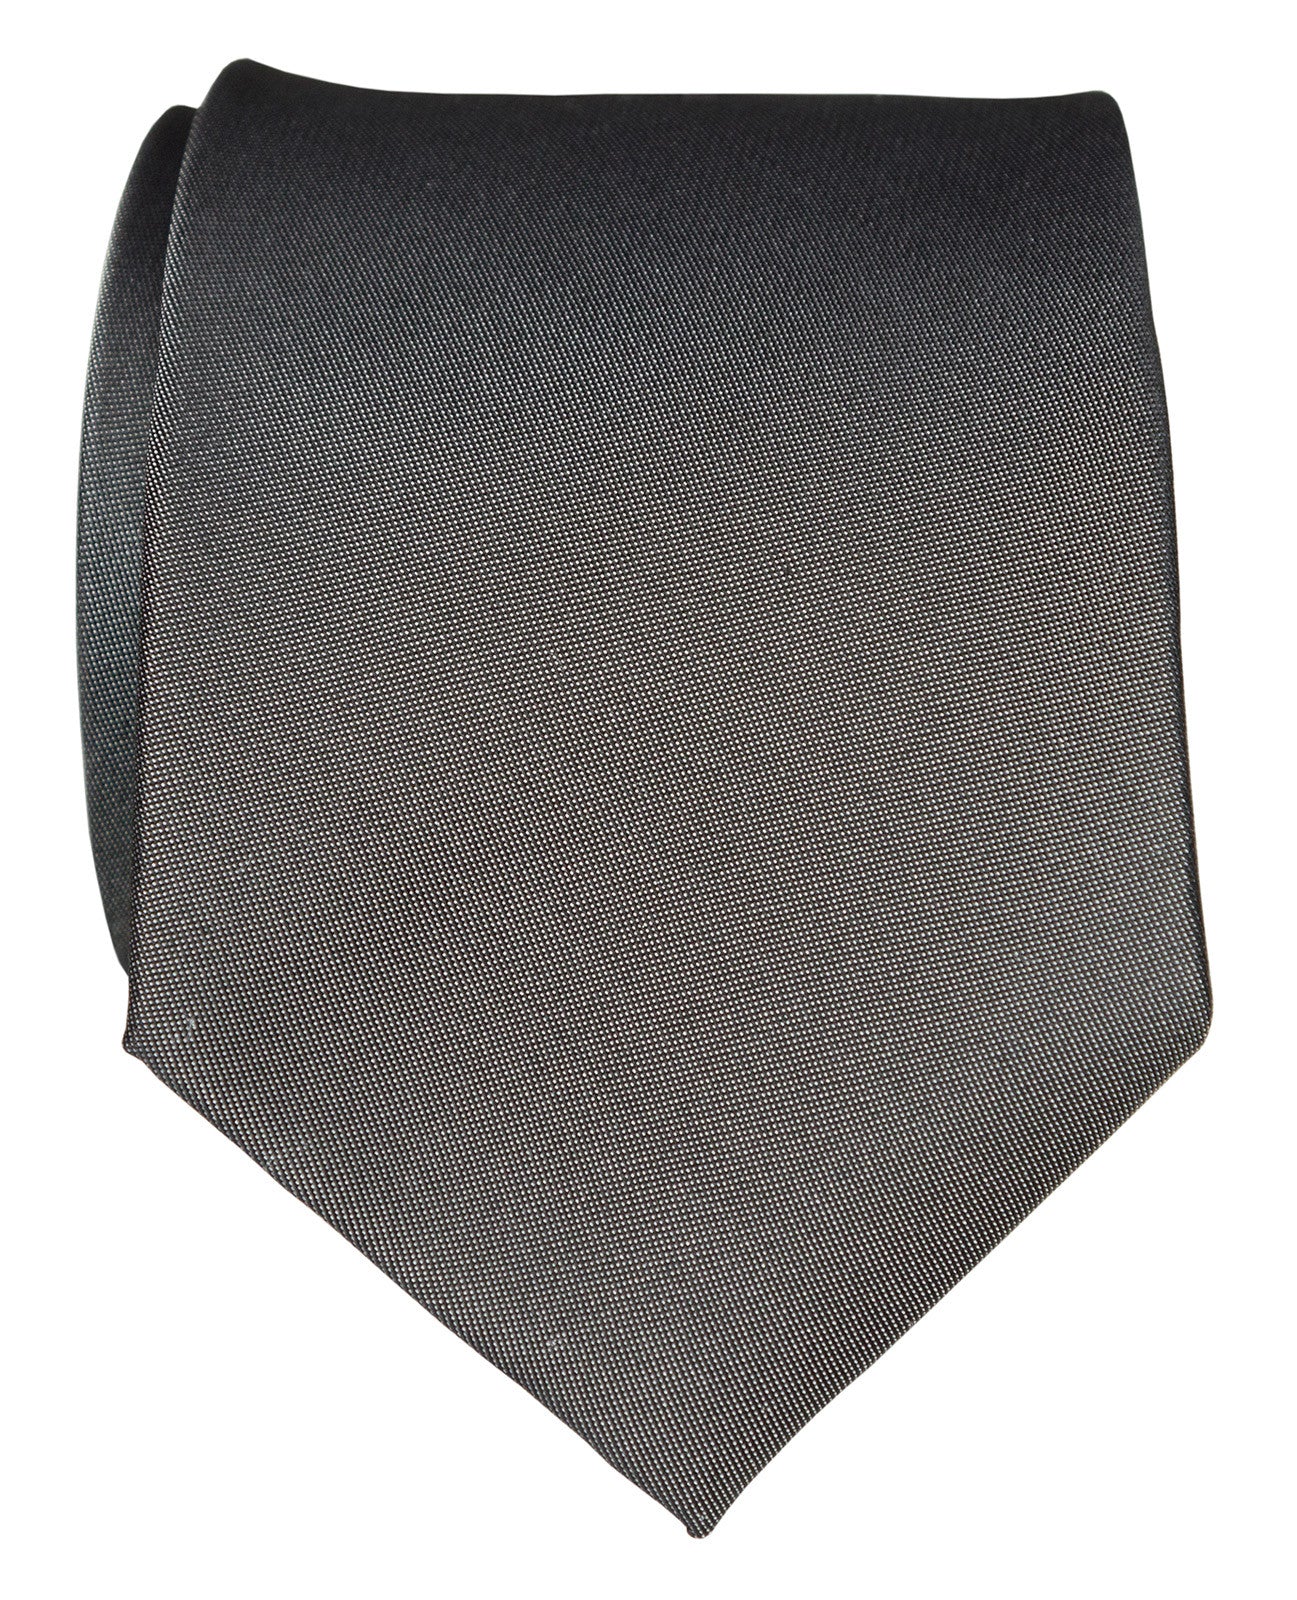 Micro CD Diamond Tie Black and Gray Silk